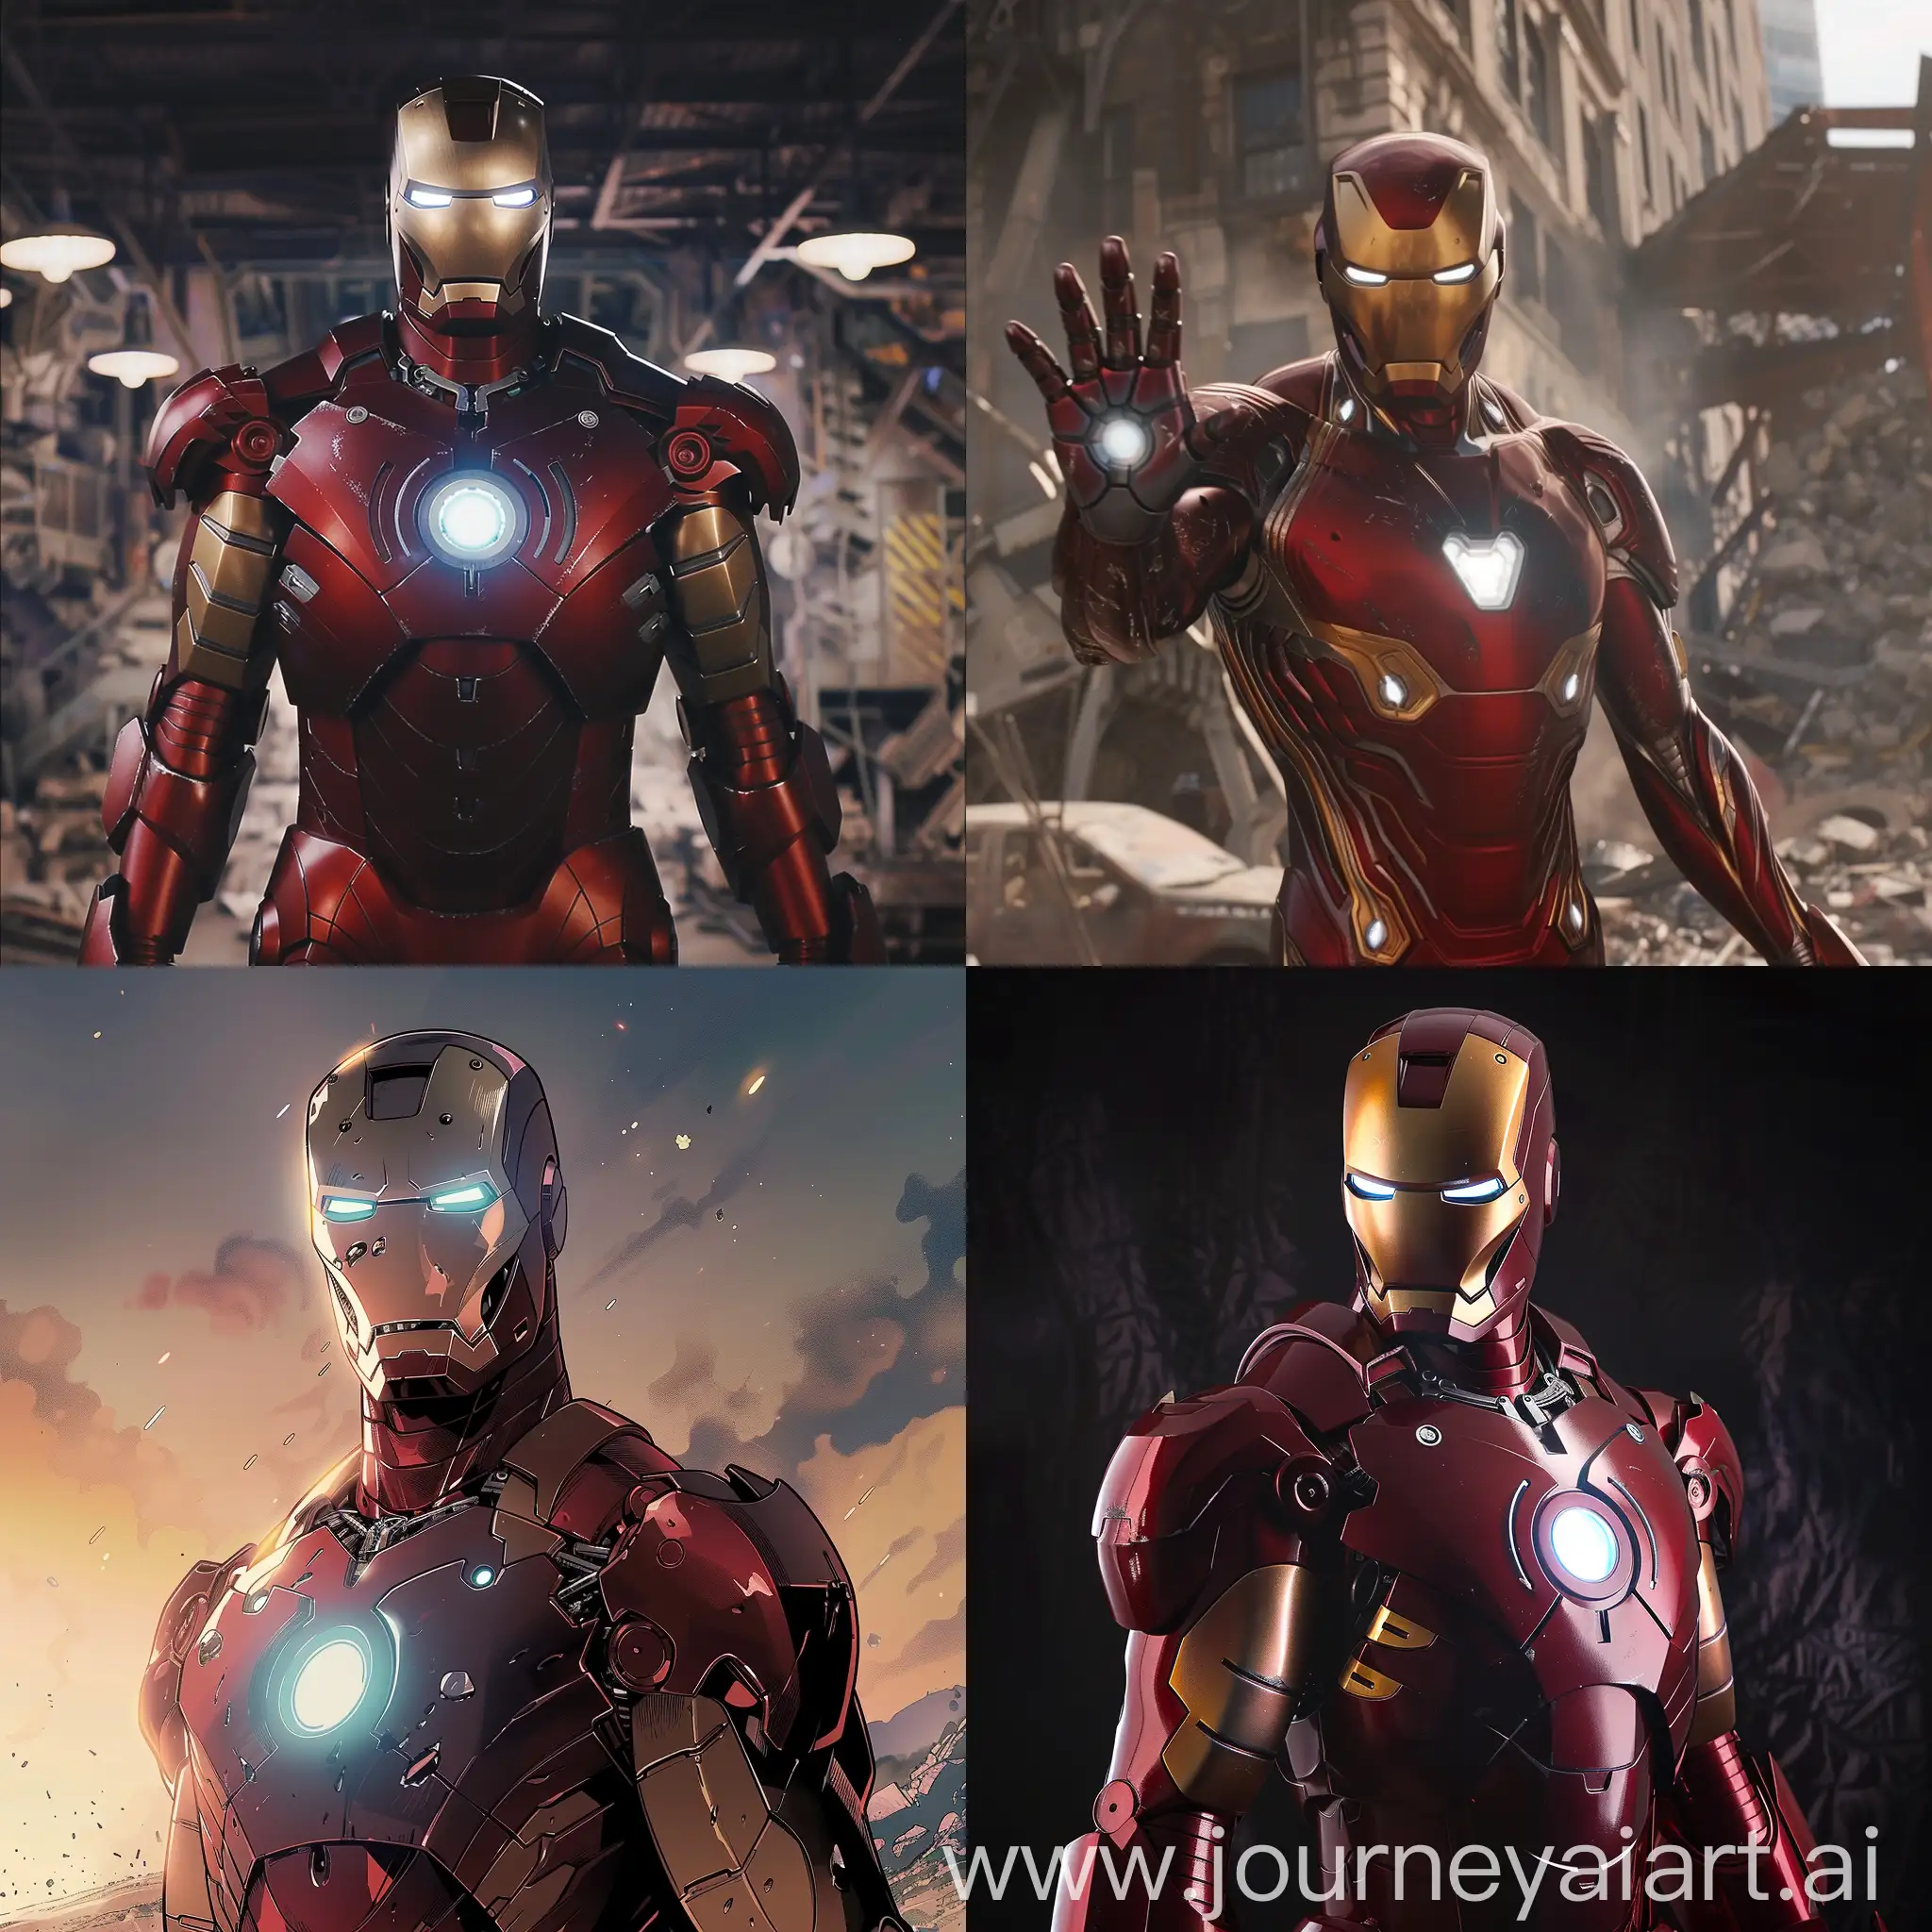 Iron-Man-Versus-Enemy-Robot-in-Intense-Combat